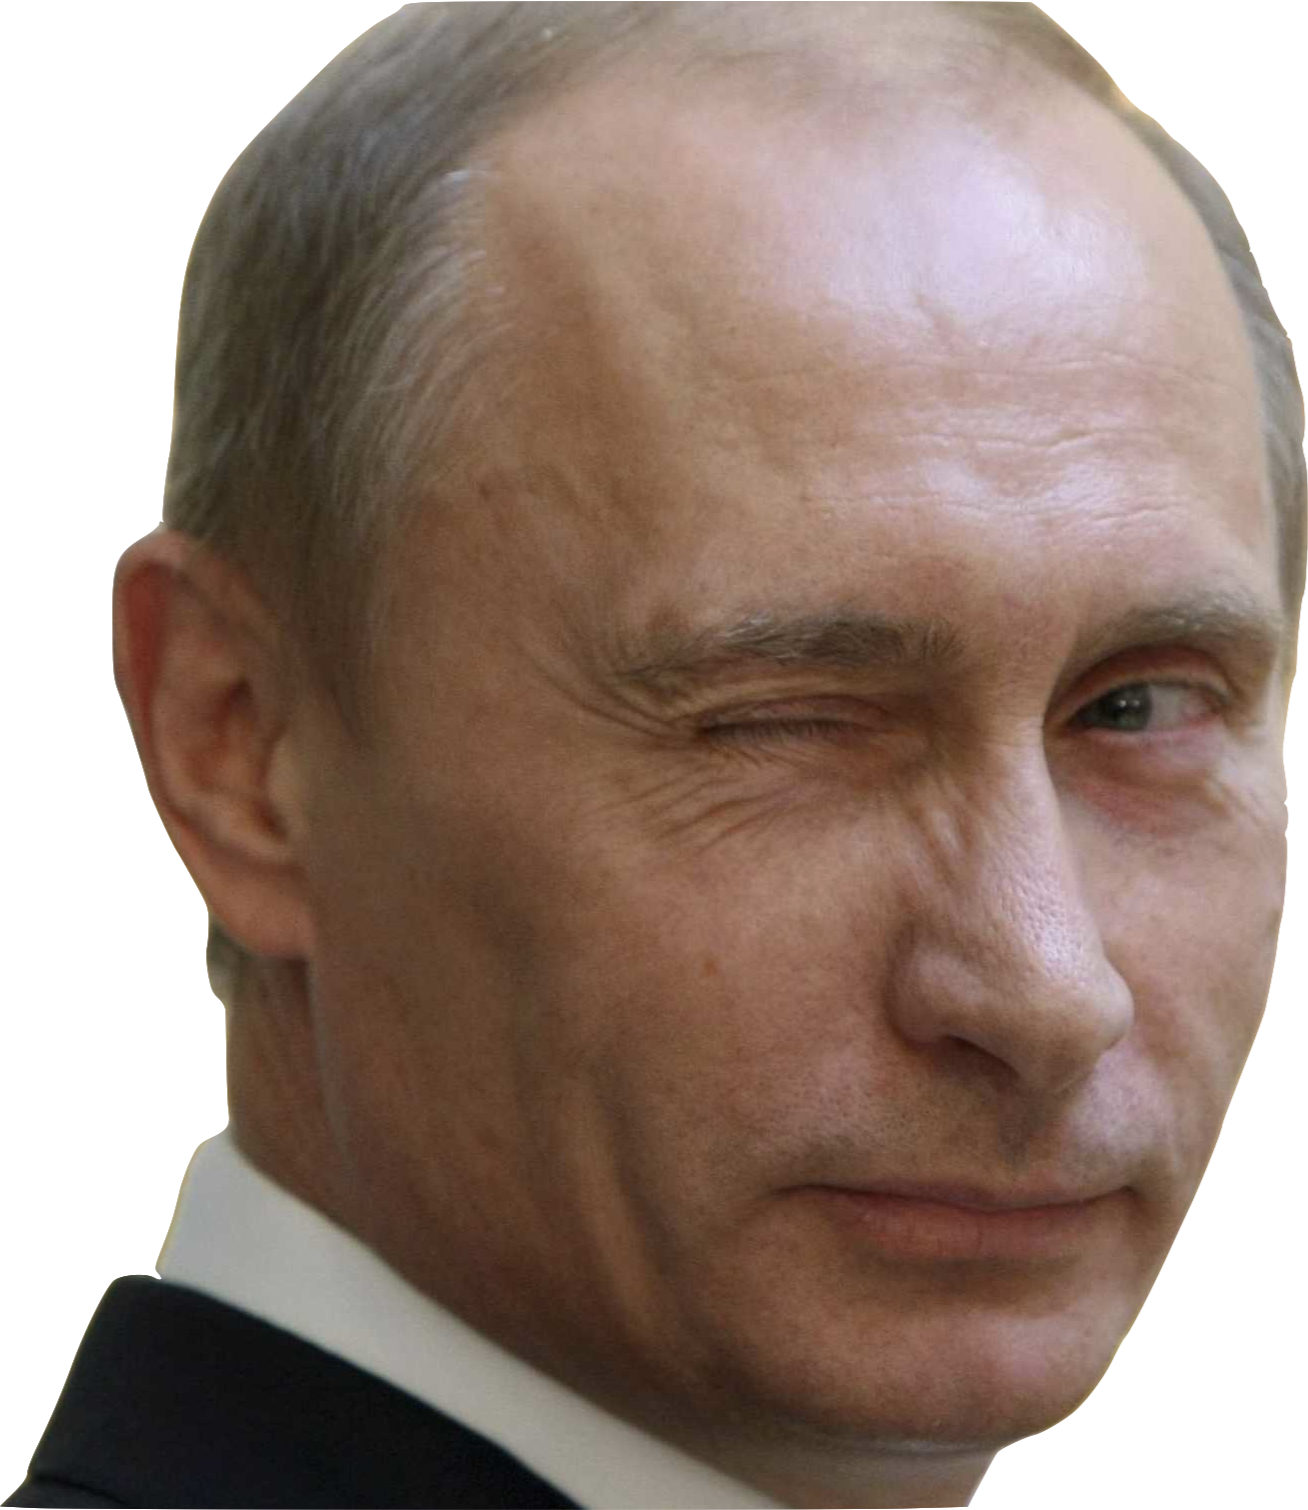 Putin Face Transparent Transparent Background - Putin Face Transparent Background (1308x1510), Png Download